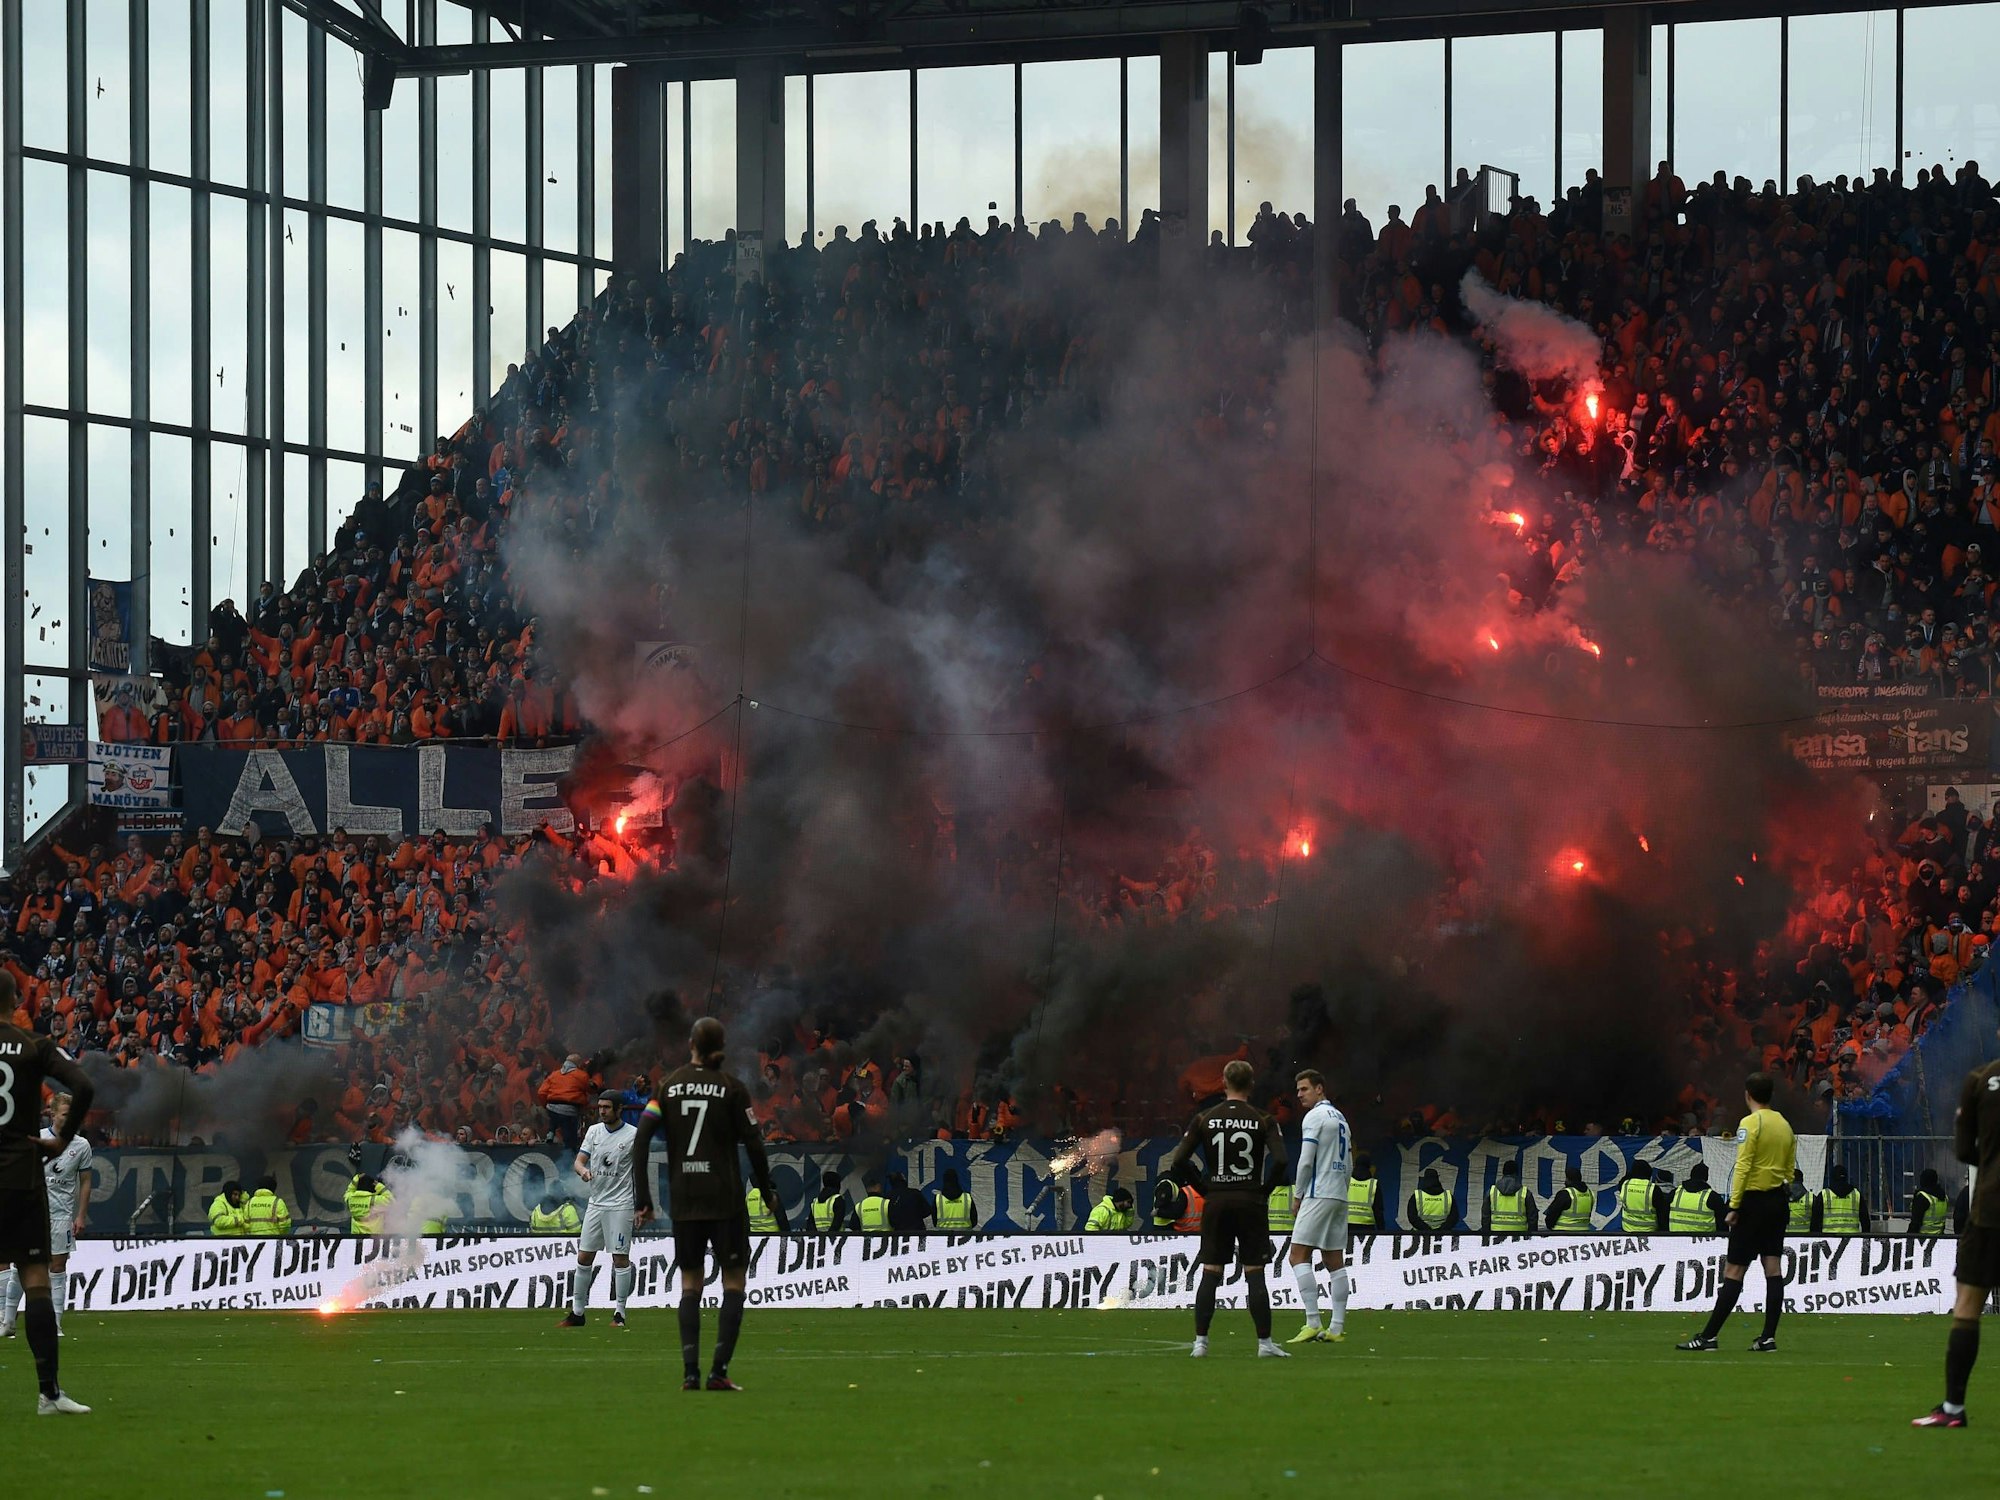 Millerntor-Stadion in Hamburg: Fans aus Rostock zünden bengalisches Feuer.